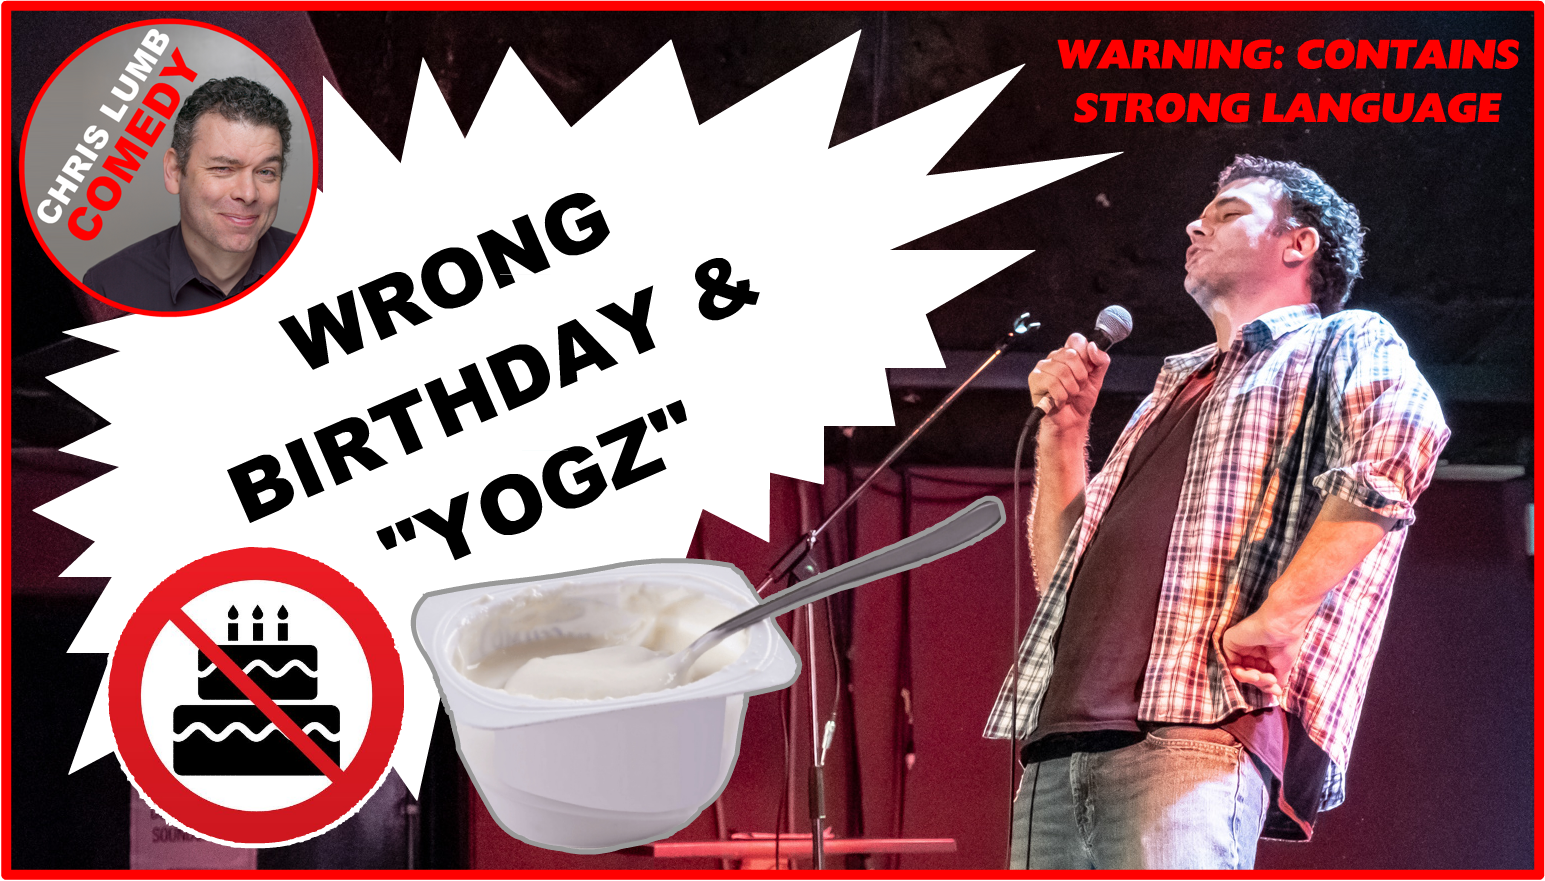 Chris Lumb Comedy "Wrong Birthday and Yogz"